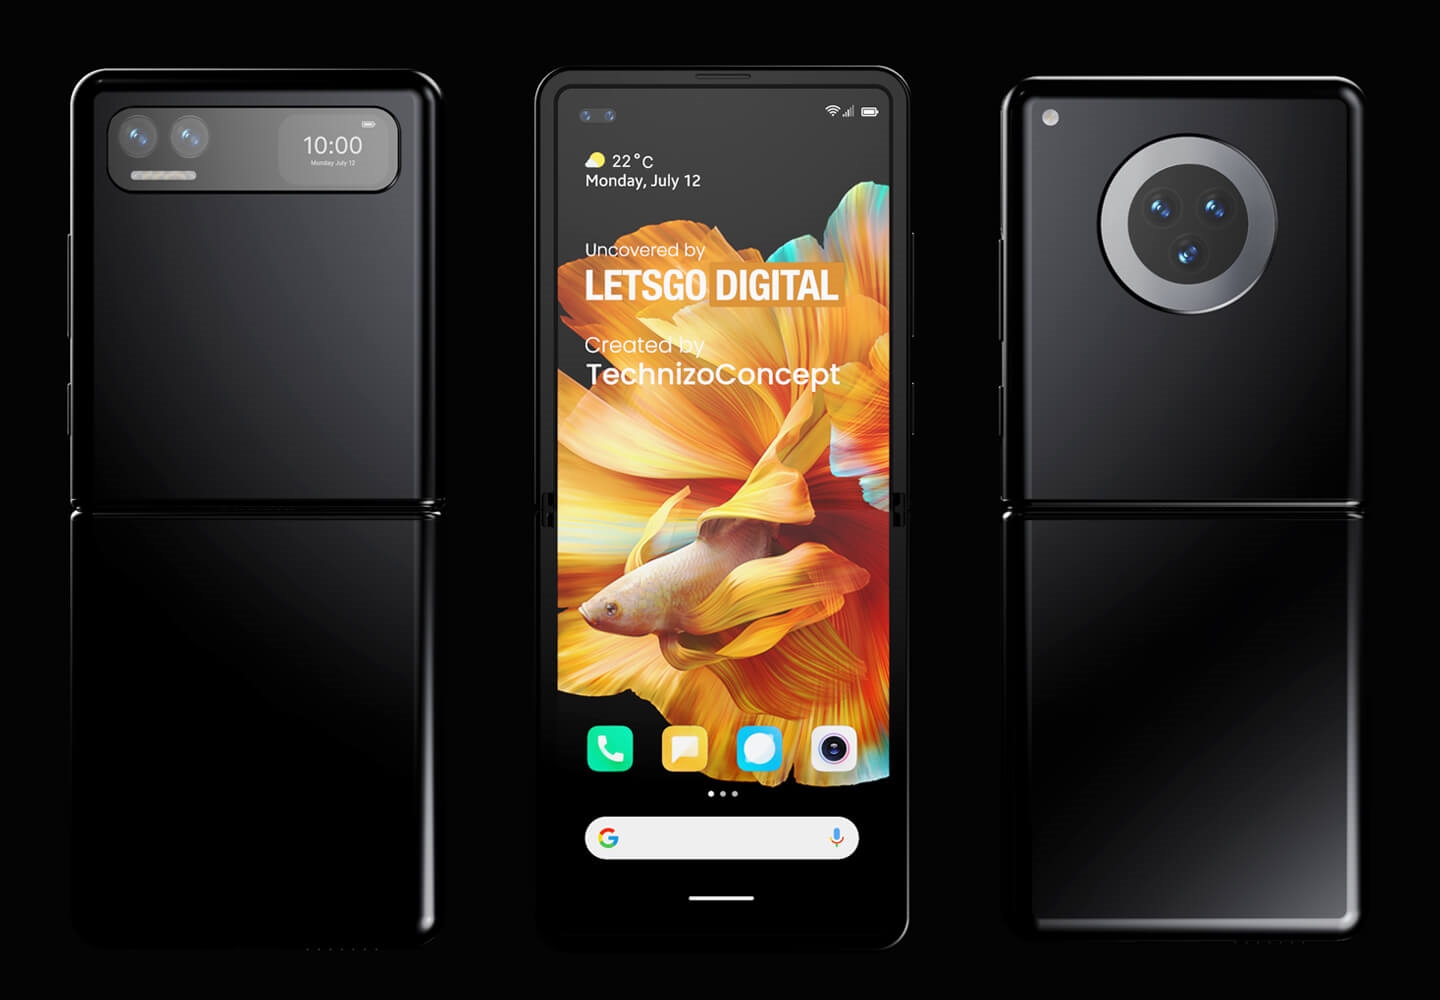 Xiaomi Mi MIX Flip: бюджетный смартфон с необычной конструкцией